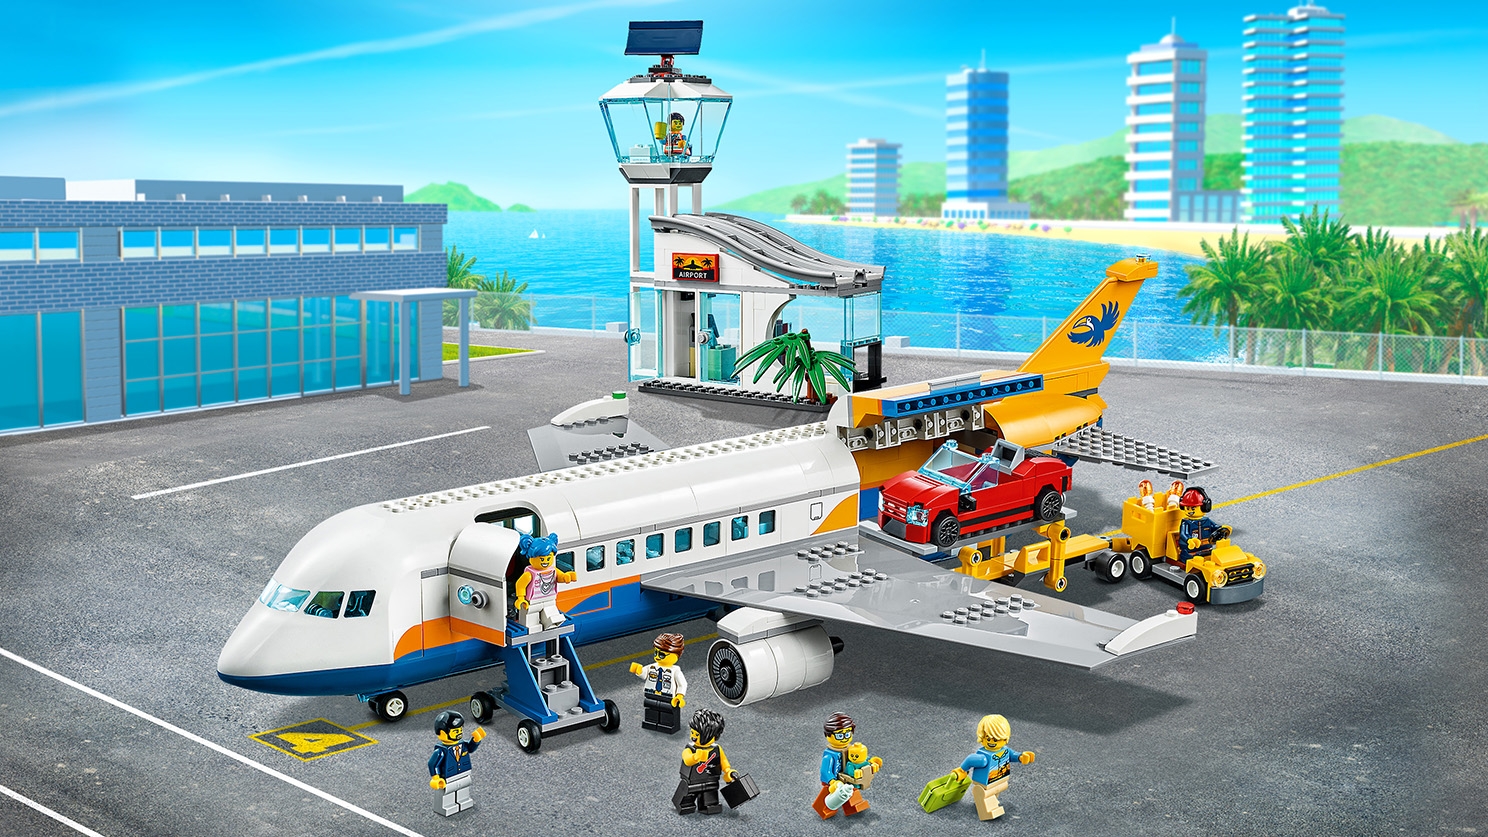 Passenger Airplane - Videos - LEGO.com for kids